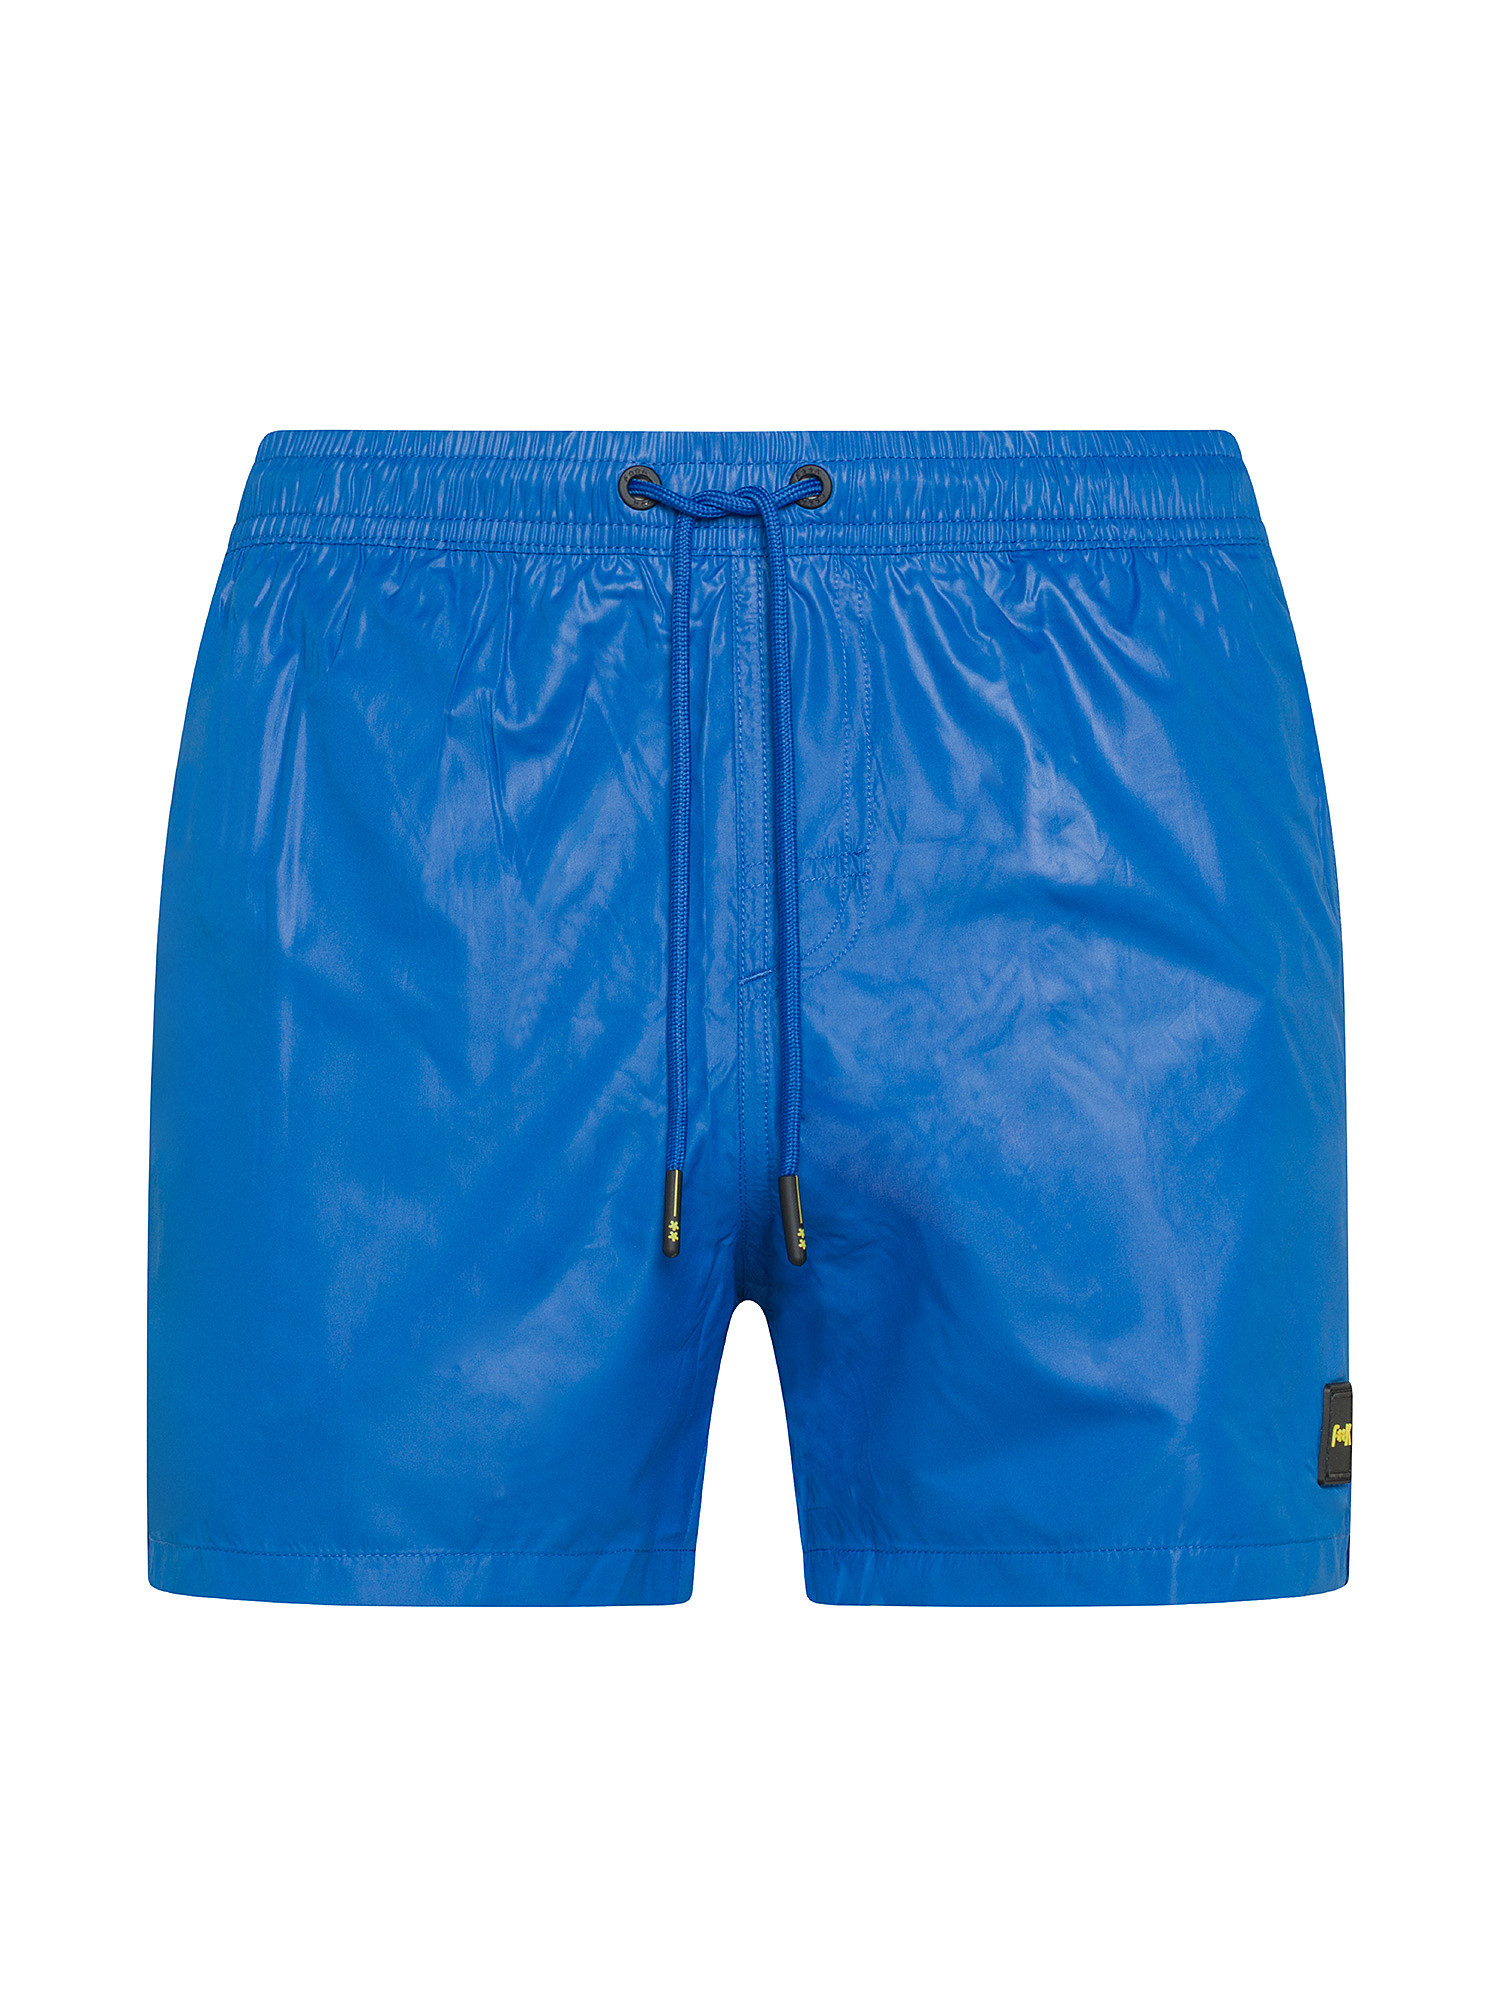 F**K - Shiny swim shorts, Royal Blue, large image number 0